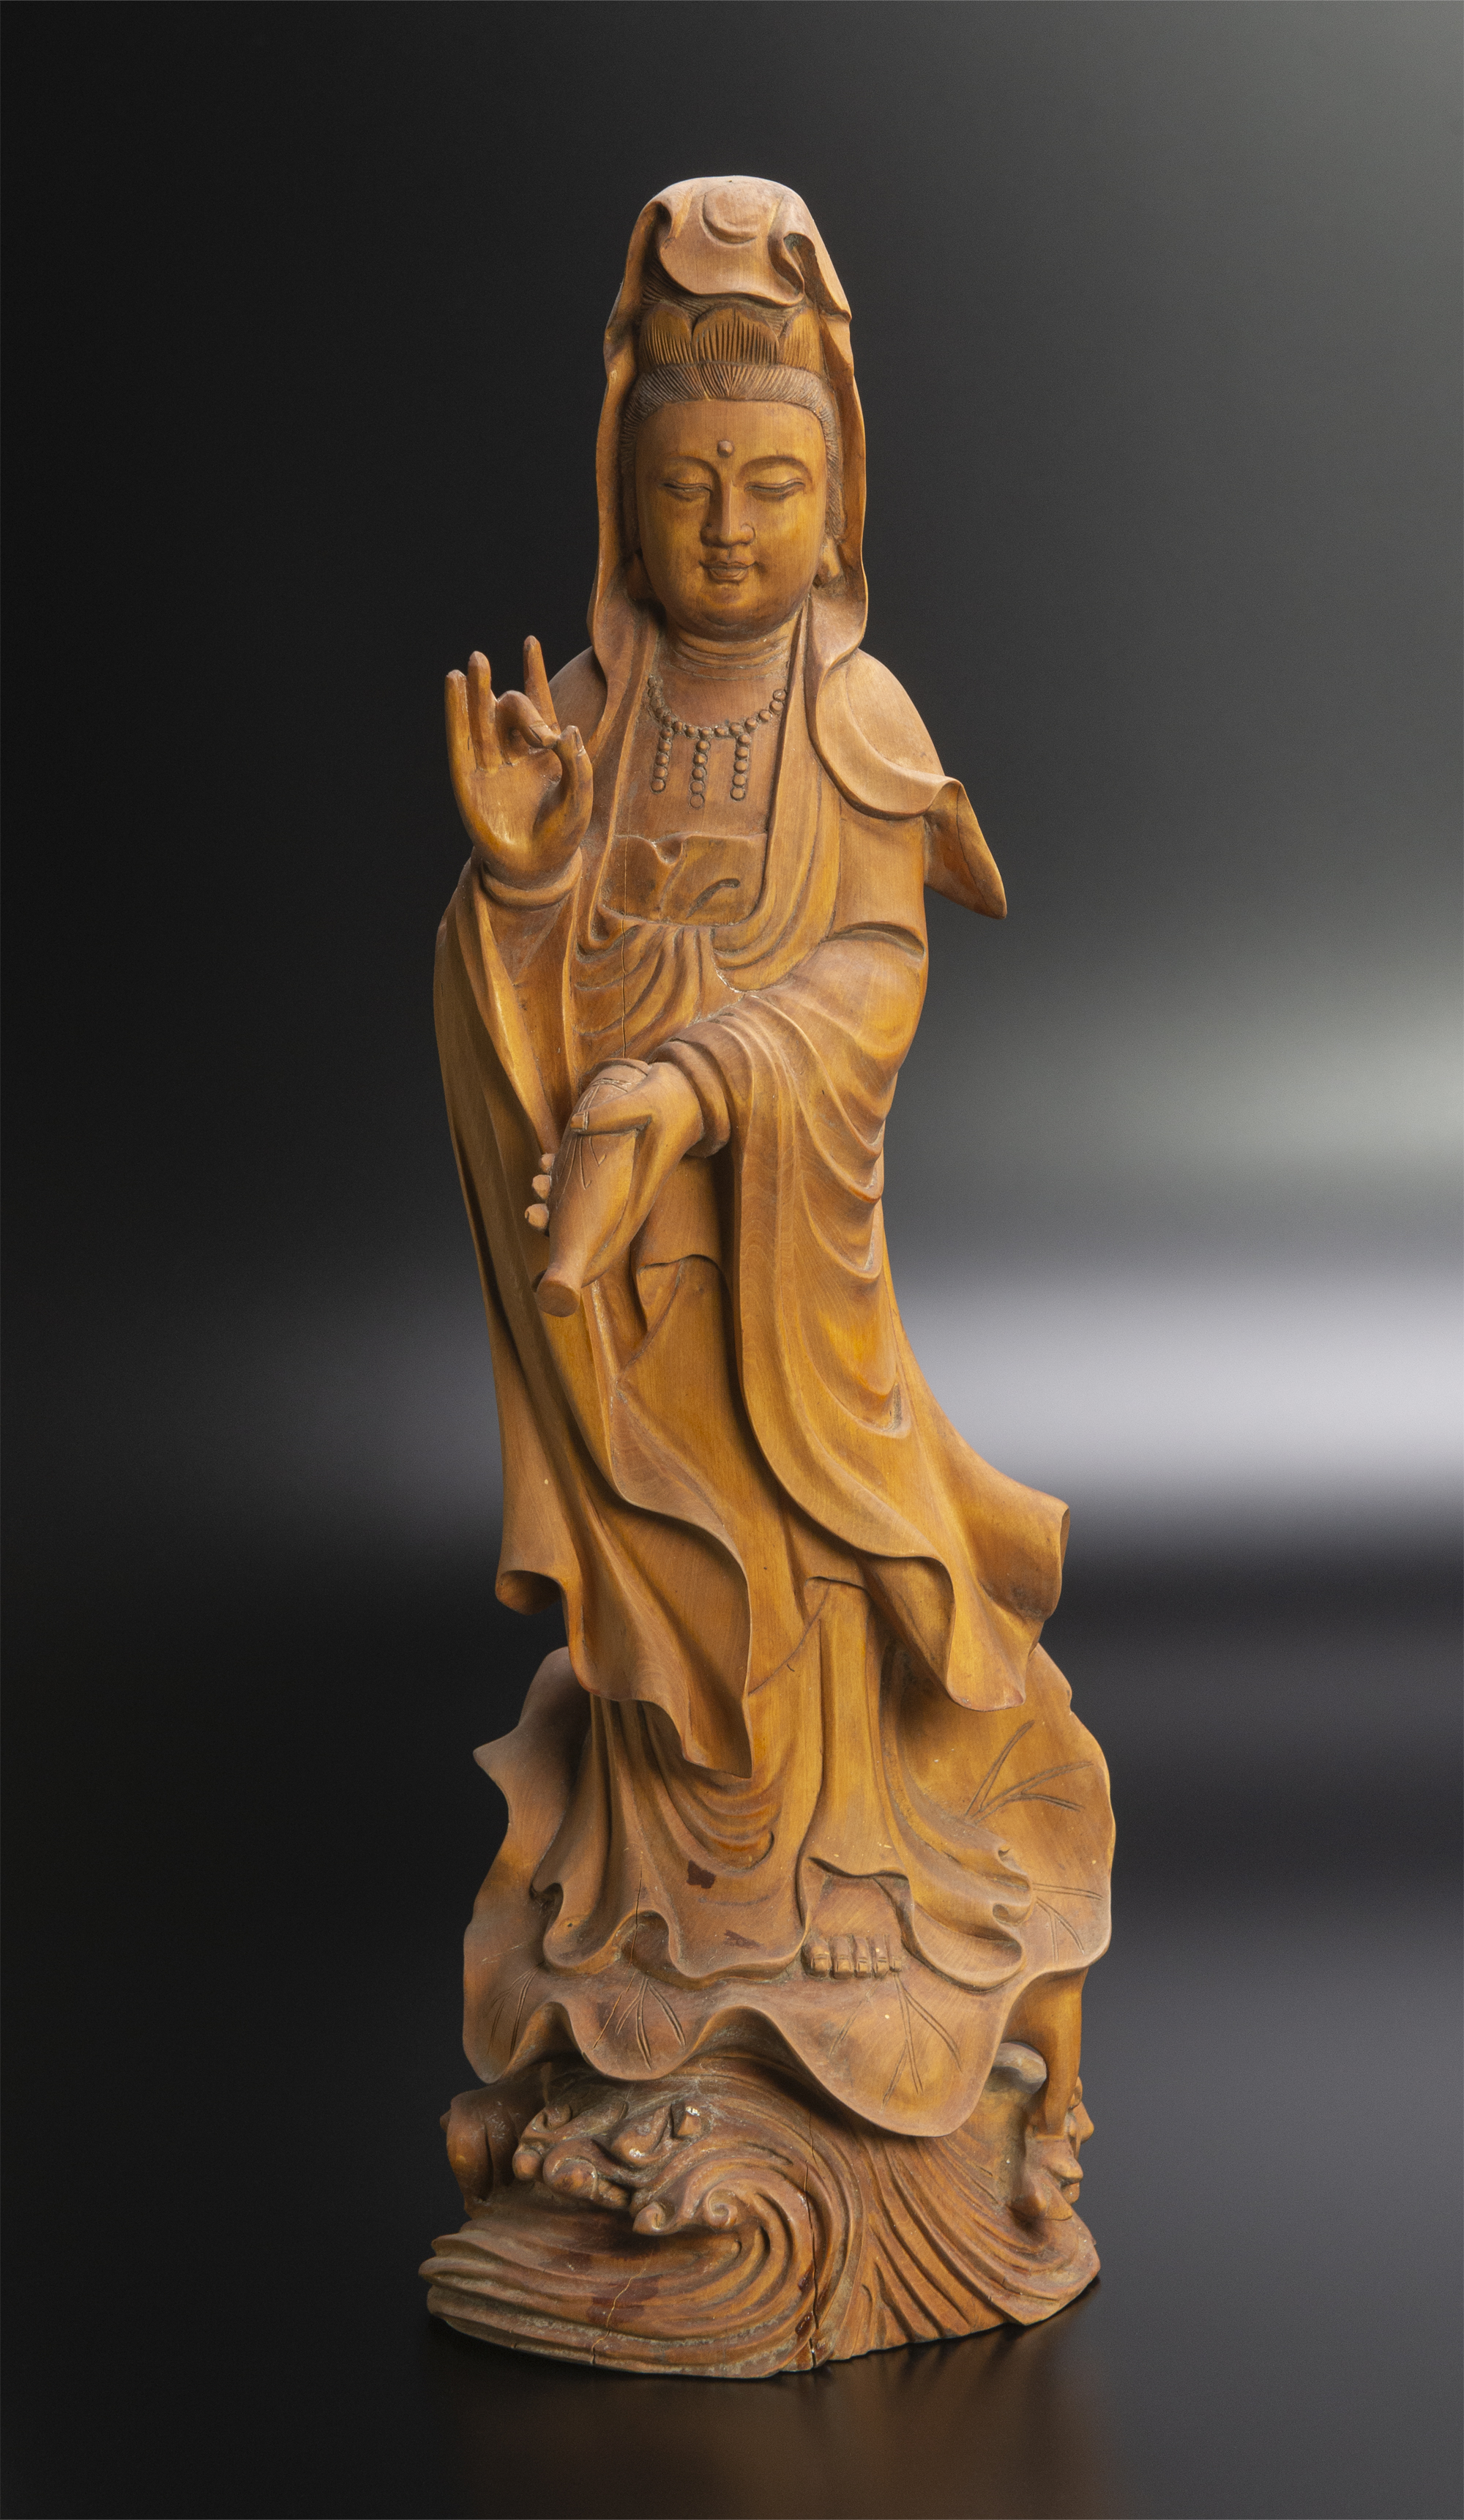 【送料無料安い】仏教美術 タイ 木彫 仏像 高さ 41.2cm チベット 密教 時代 FI14-2/st 仏像